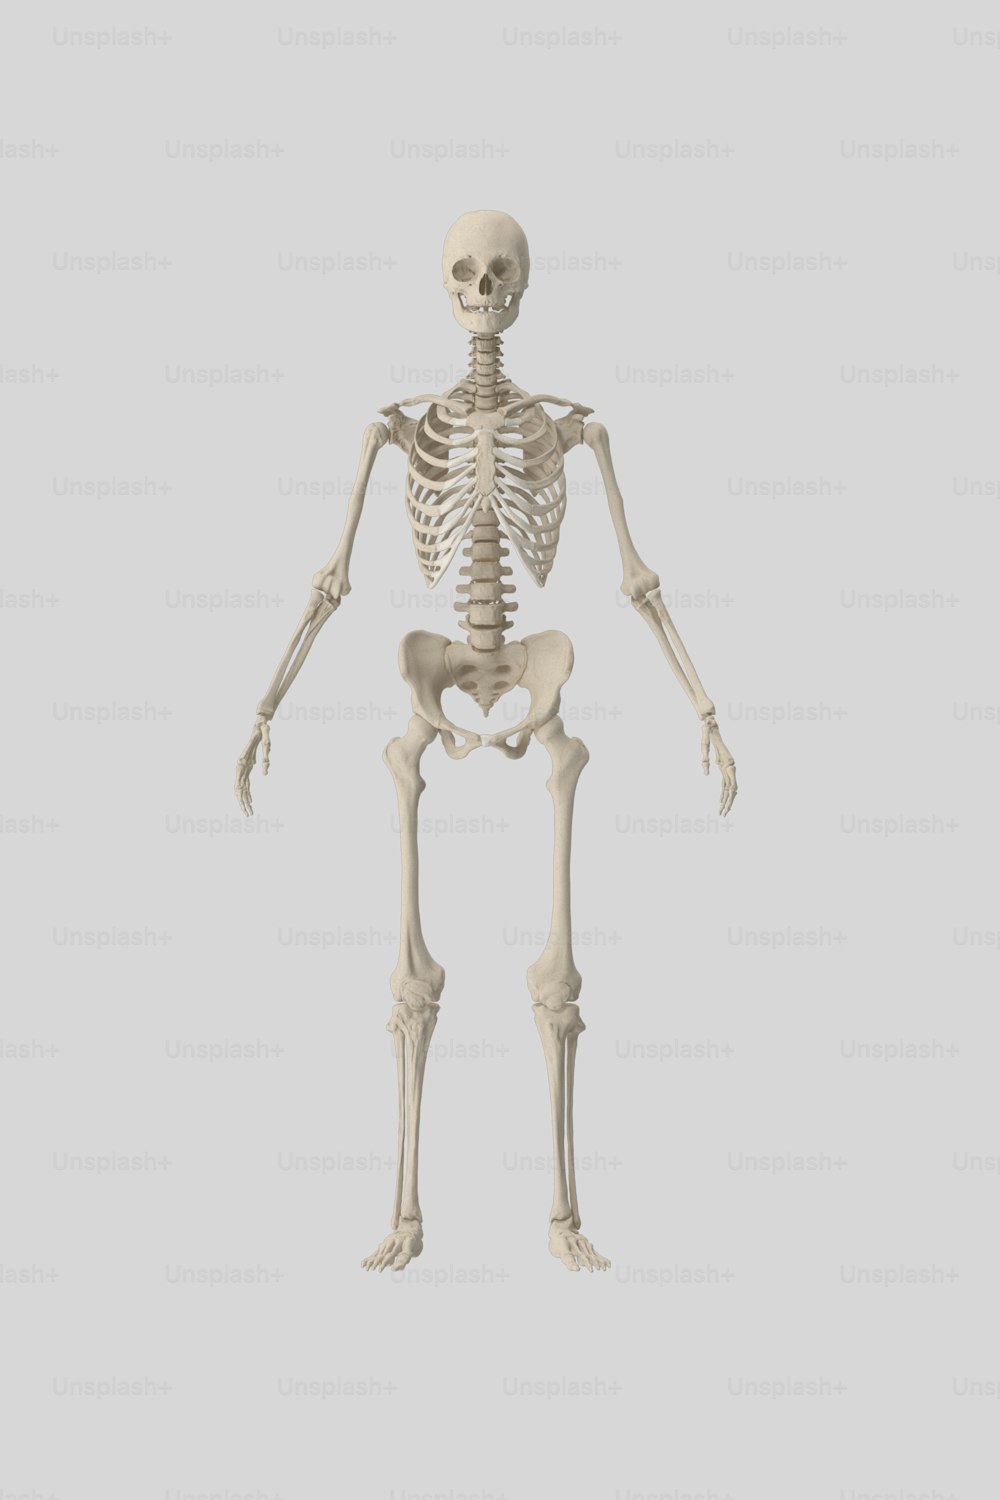 この画像には人間の骨格が示されています